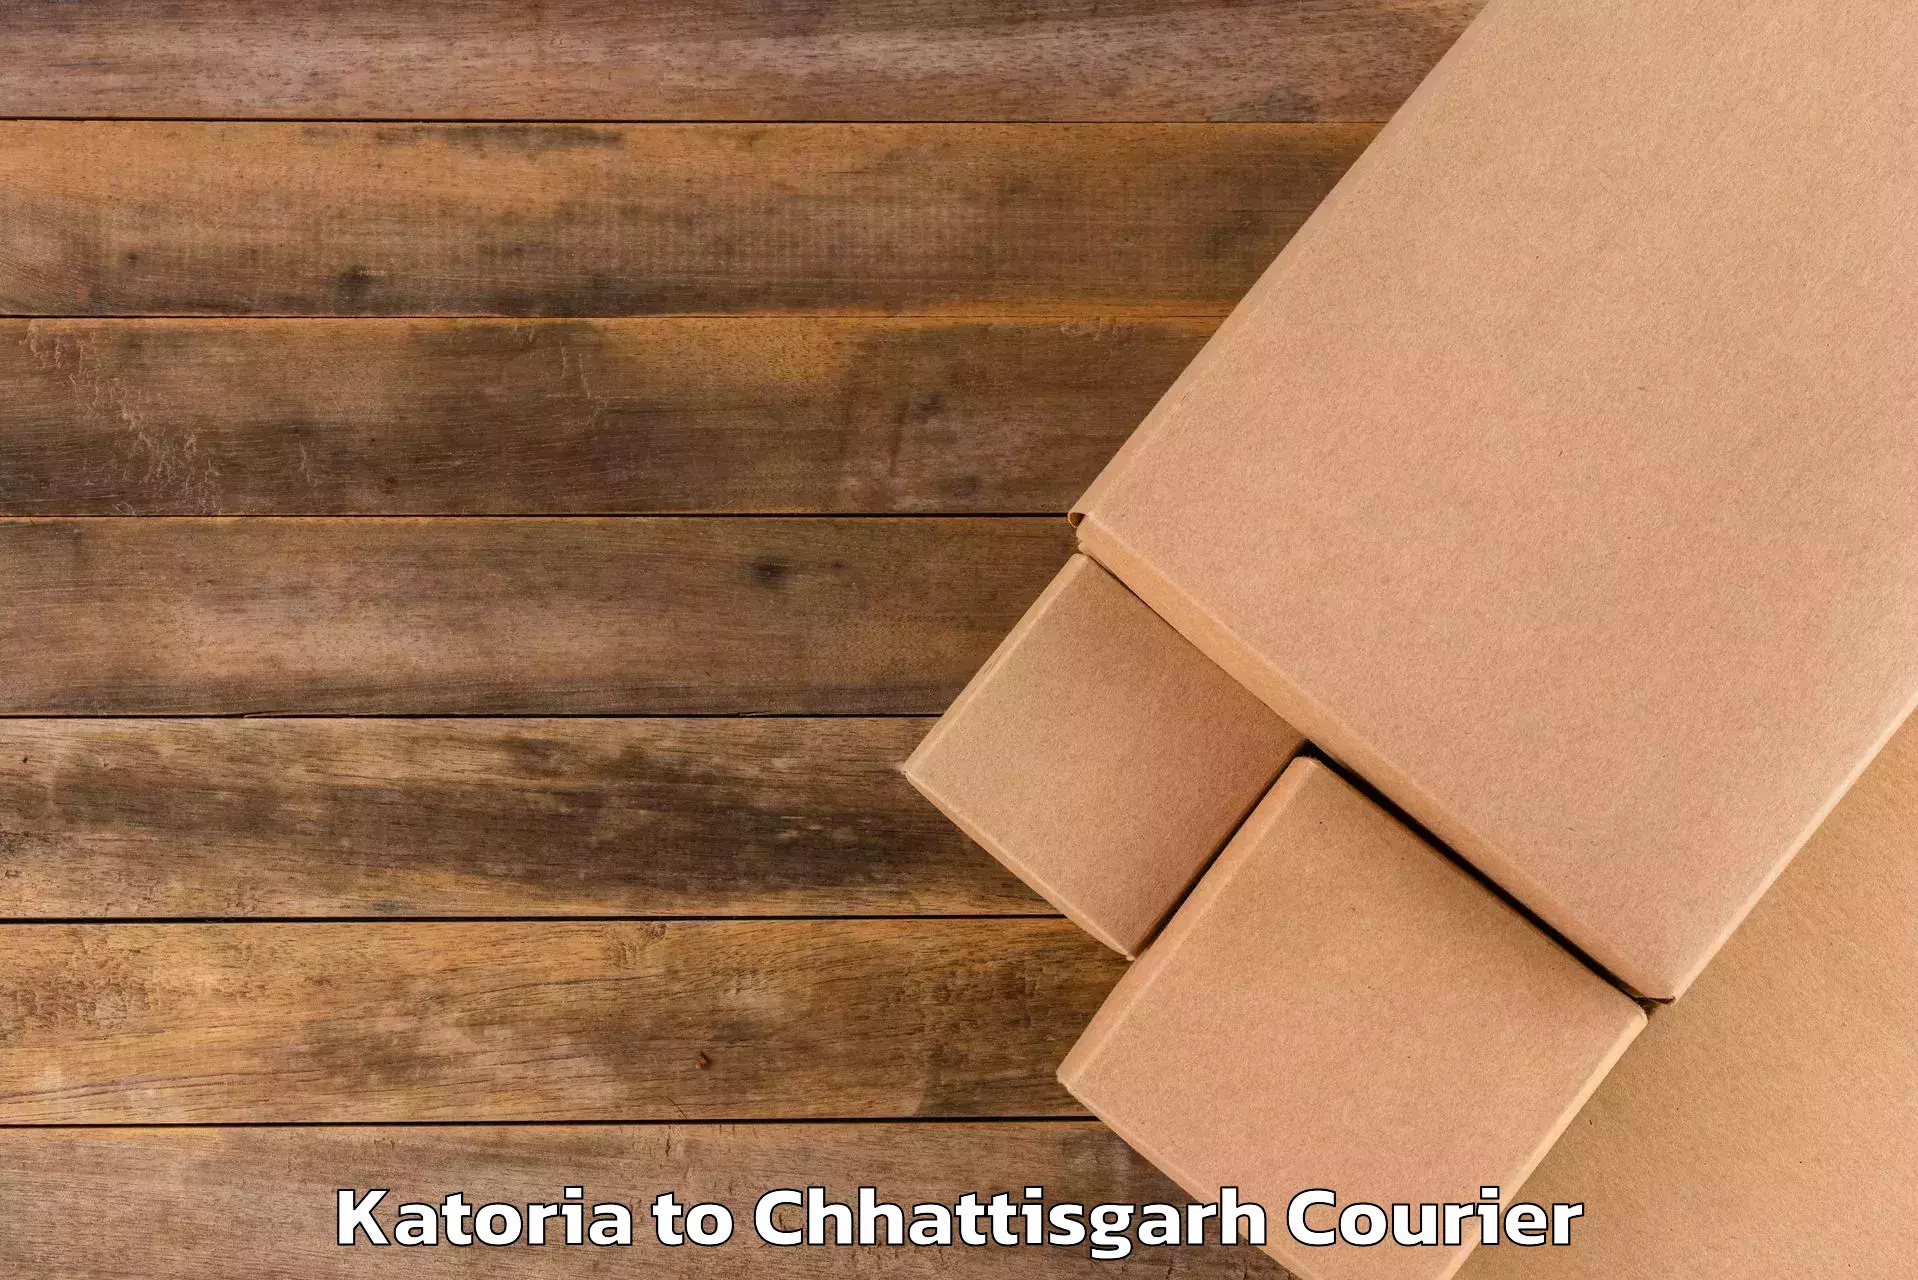 Luggage forwarding service Katoria to Surguja